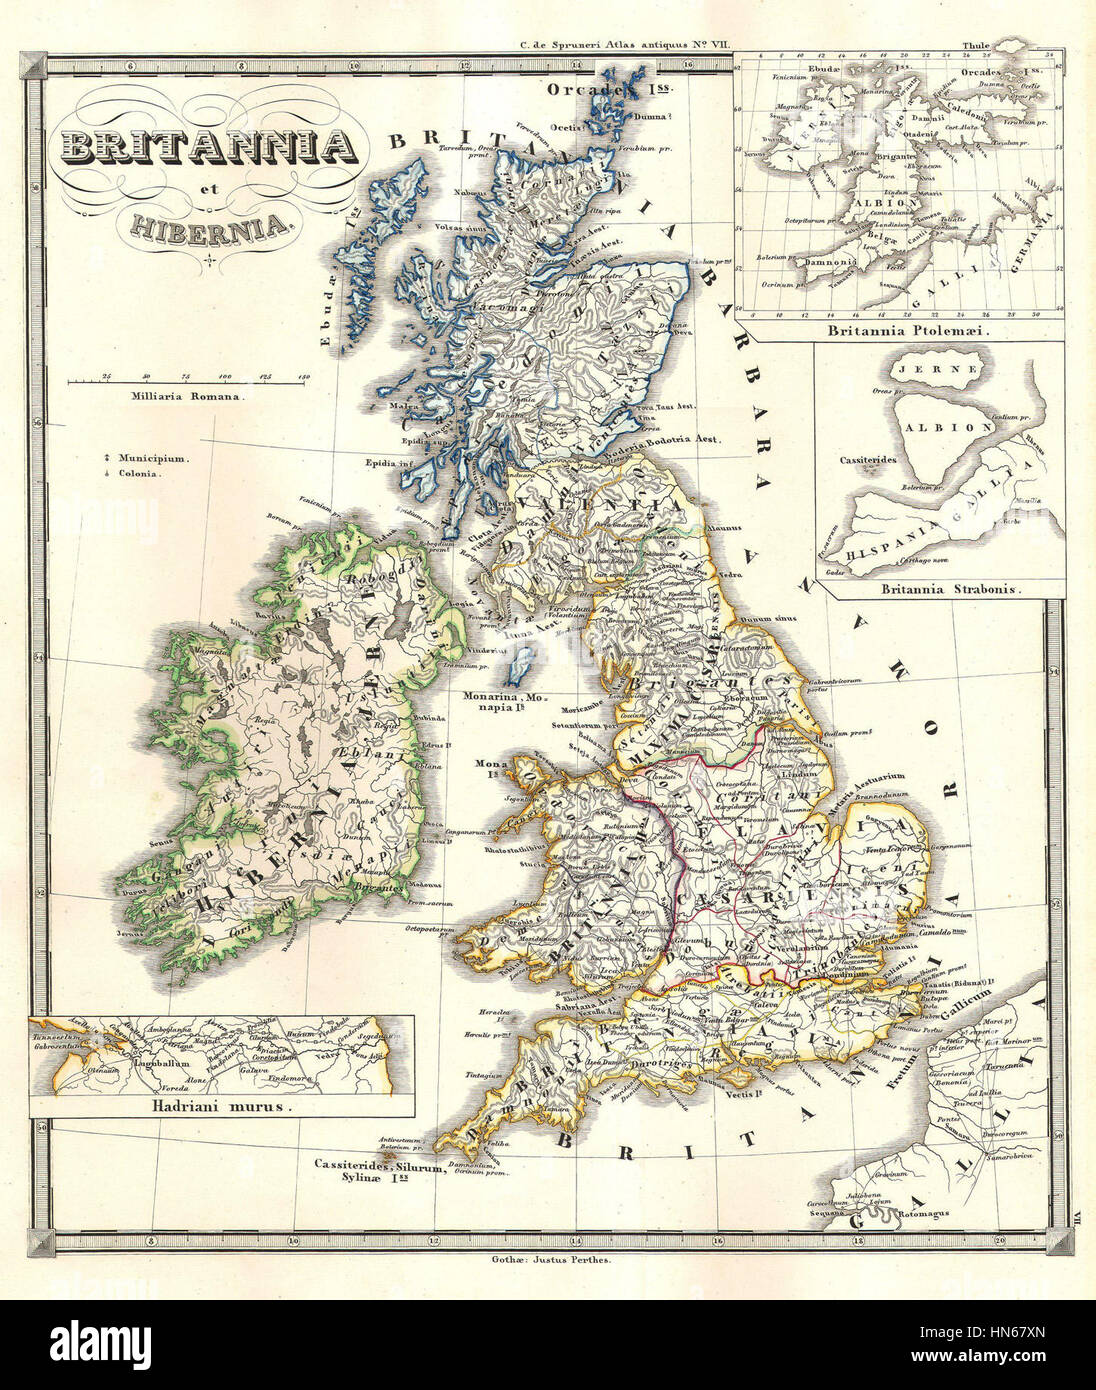 Britannia ^ Hibernia, nei tempi antichi - Geographicus - Britania-spruneri-1855, 1855 Spruneri Mappa delle Isole Britanniche Foto Stock